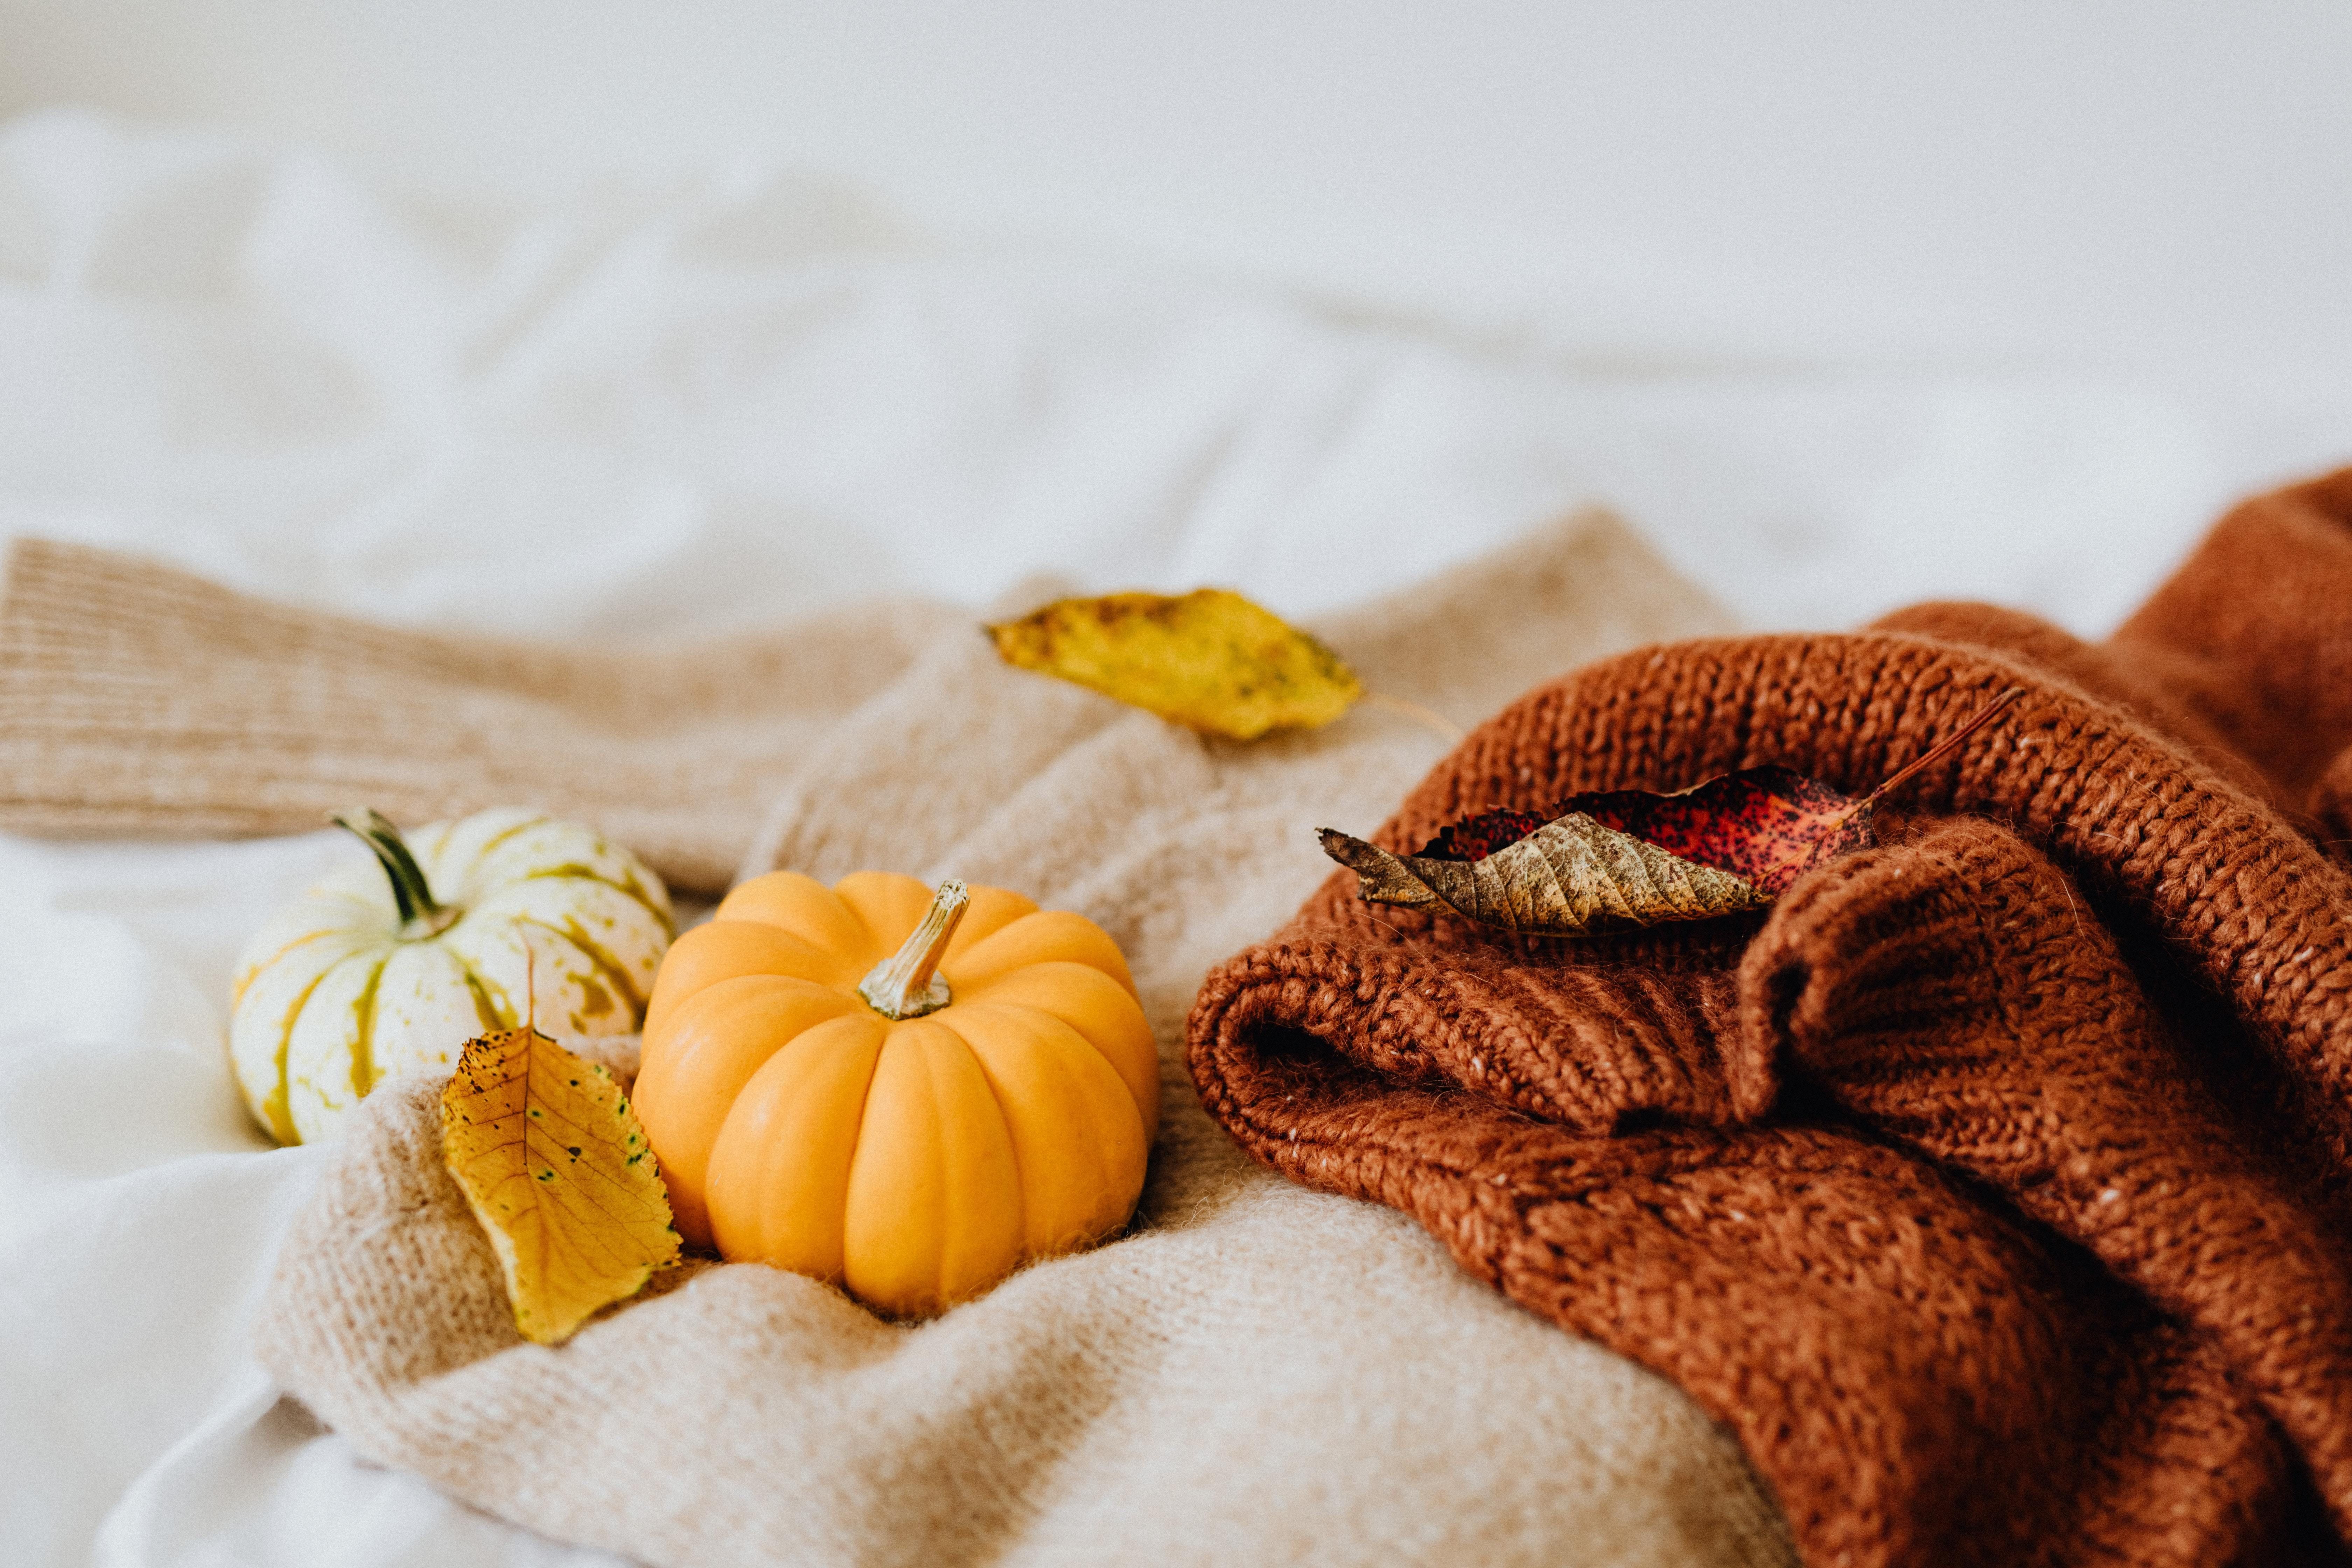 Pumpkins and blanket image.